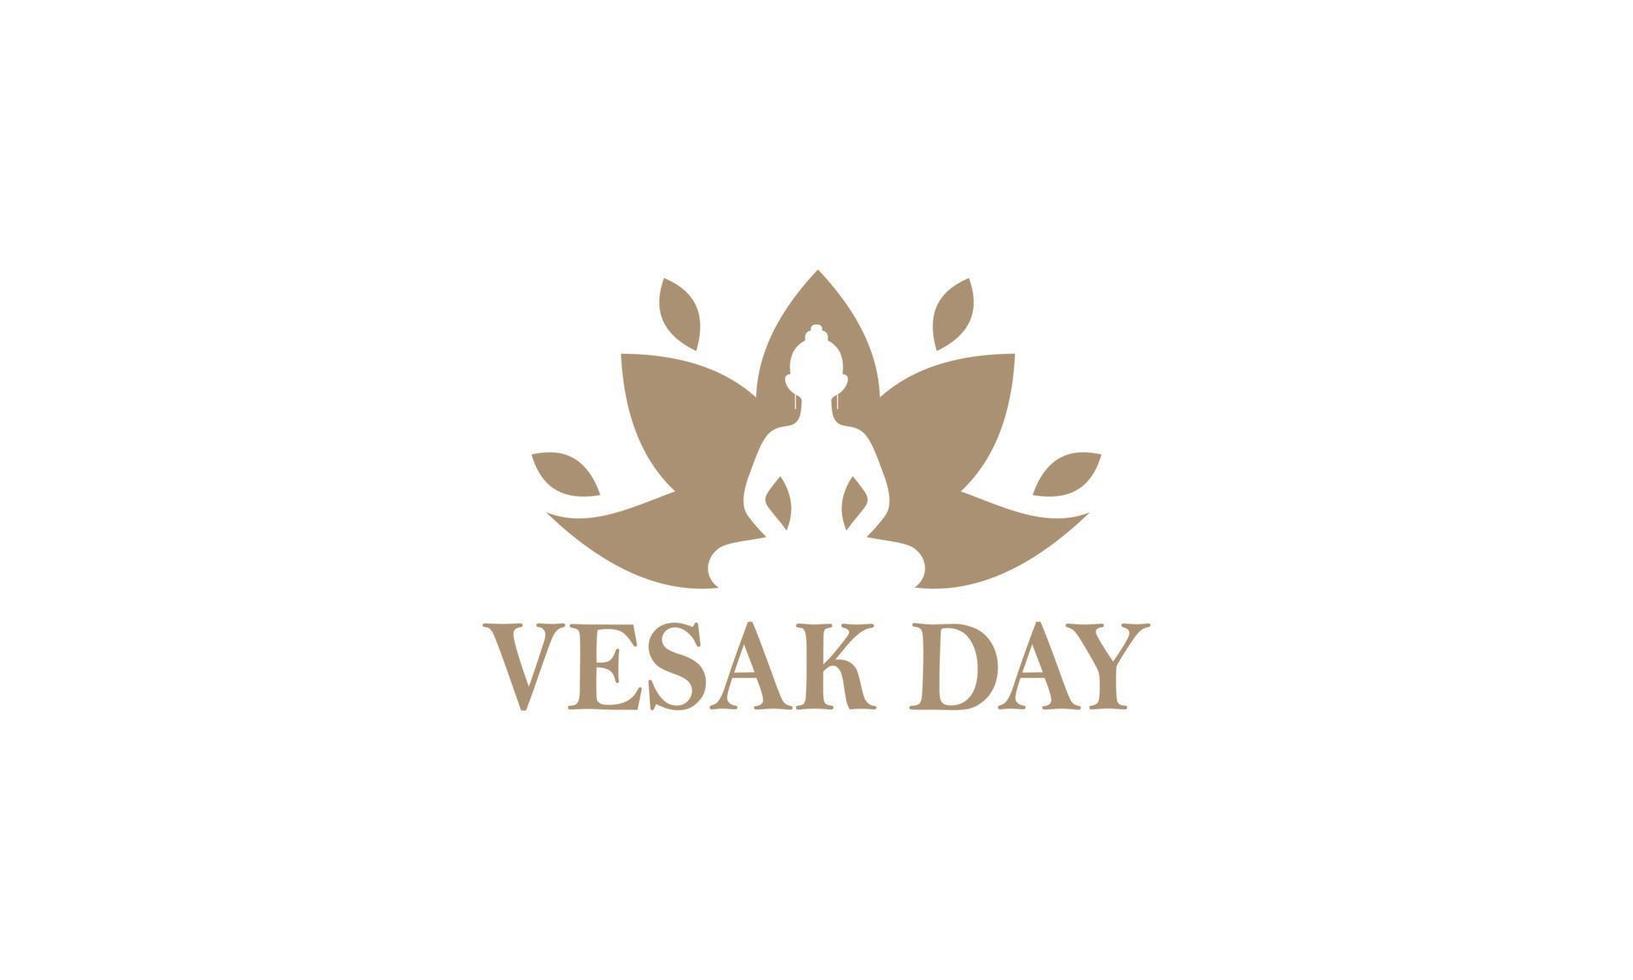 feliz día de vesak o diseño del logotipo de buddha purnima vector